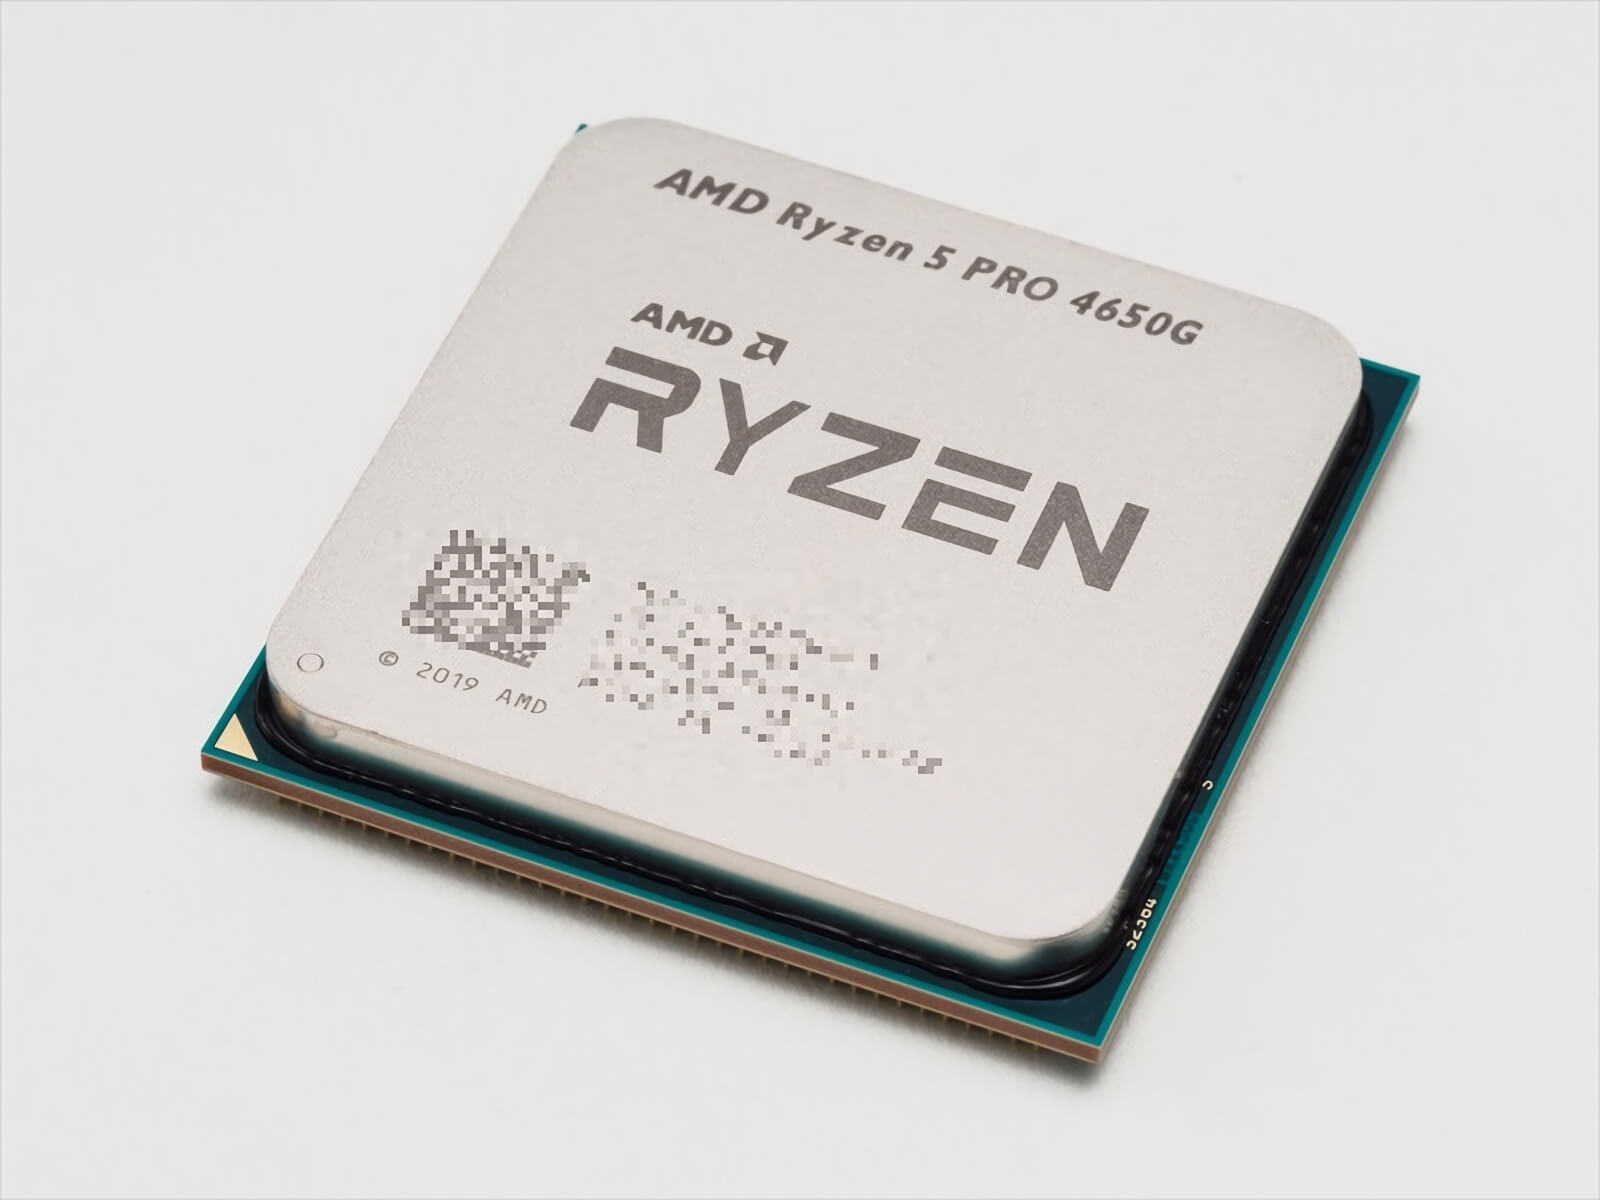 Ryzen 5 Pro 4650g 6c12t 3 7ghz 4 2 65w L2 L3 Cache 11mb Radeon Graphics 7 注1 単品でのご販売はできません マザーボードとセットでの販売となります 注2 ブリスターパックでのご提供となります 初期不良 修理等でご返品の際は必ず付属のブリスター